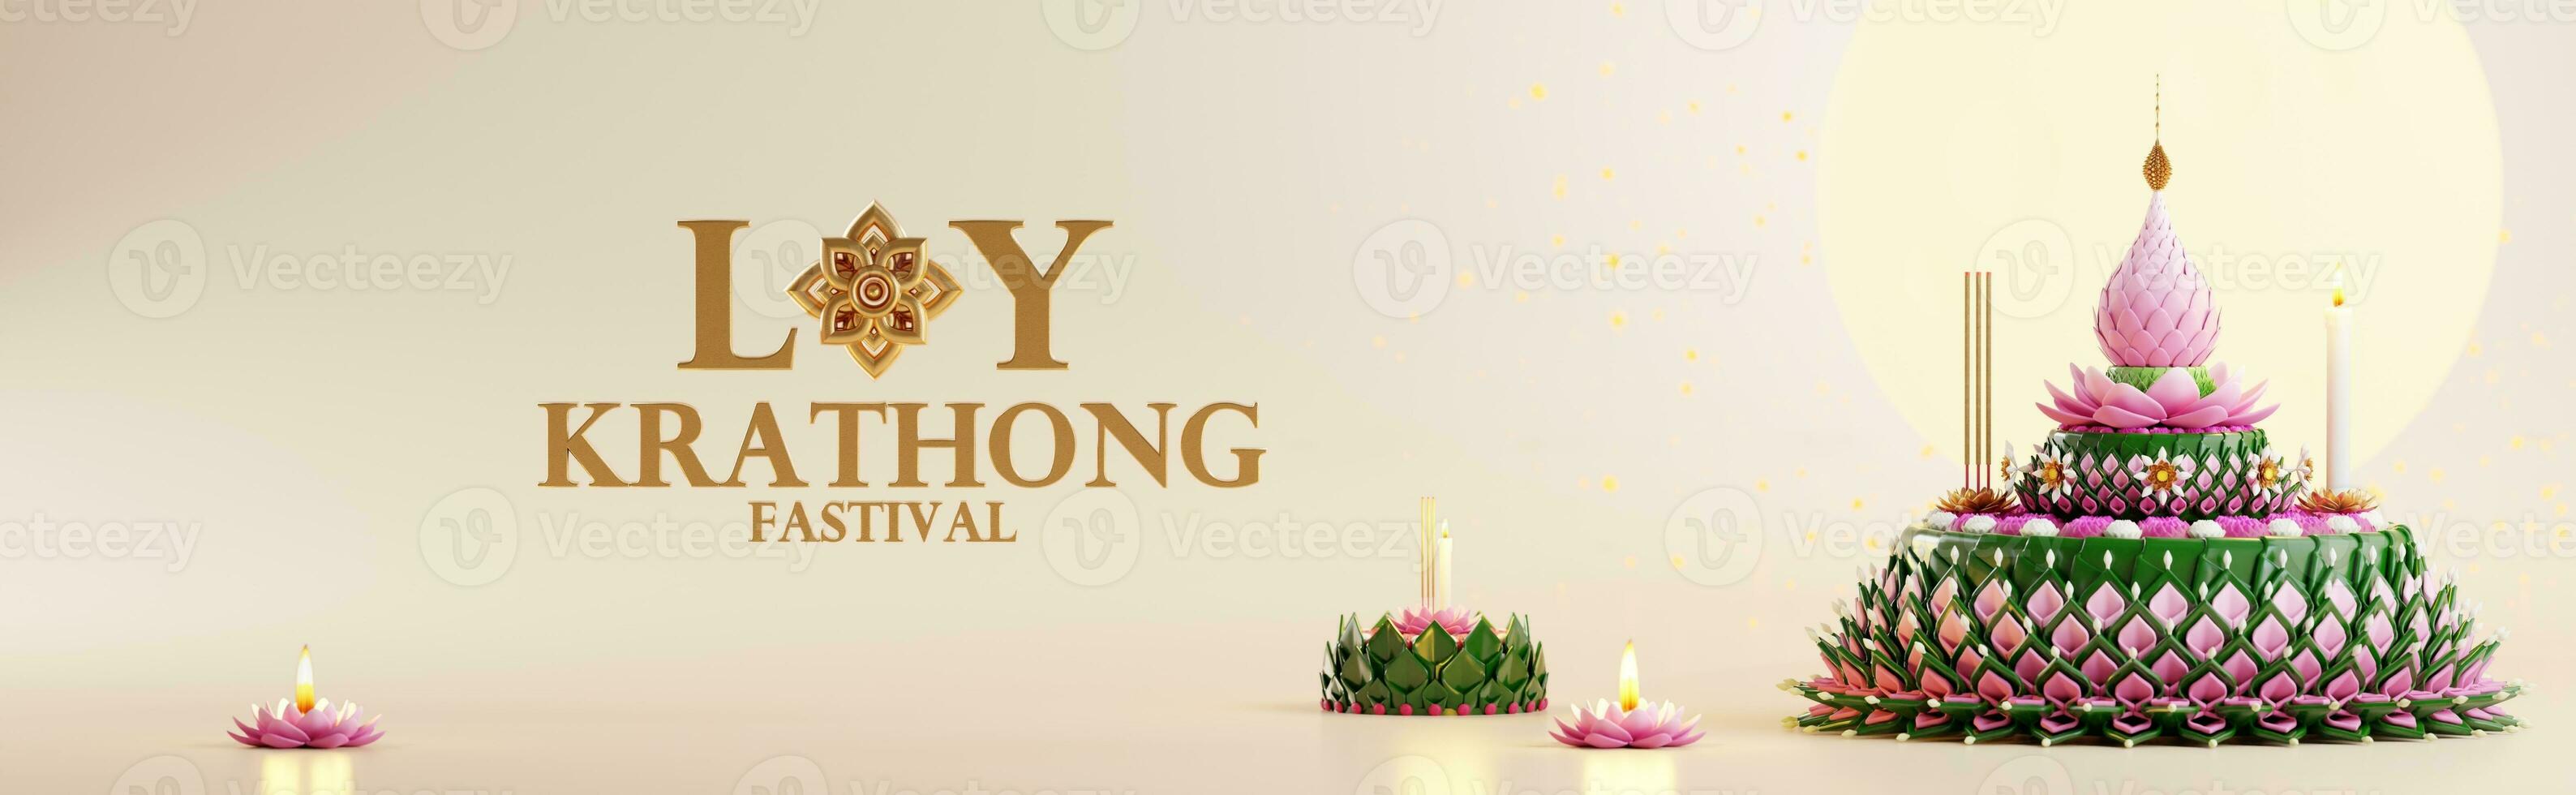 3d Rendern Illustration loy Krathong Festival und yi peng Festival im Thailand Krathong von Banane Blätter, Blumen, Kerzen und Weihrauch Stöcke, Vollmond, Fluss, und Nacht Hintergrund Farbe. foto